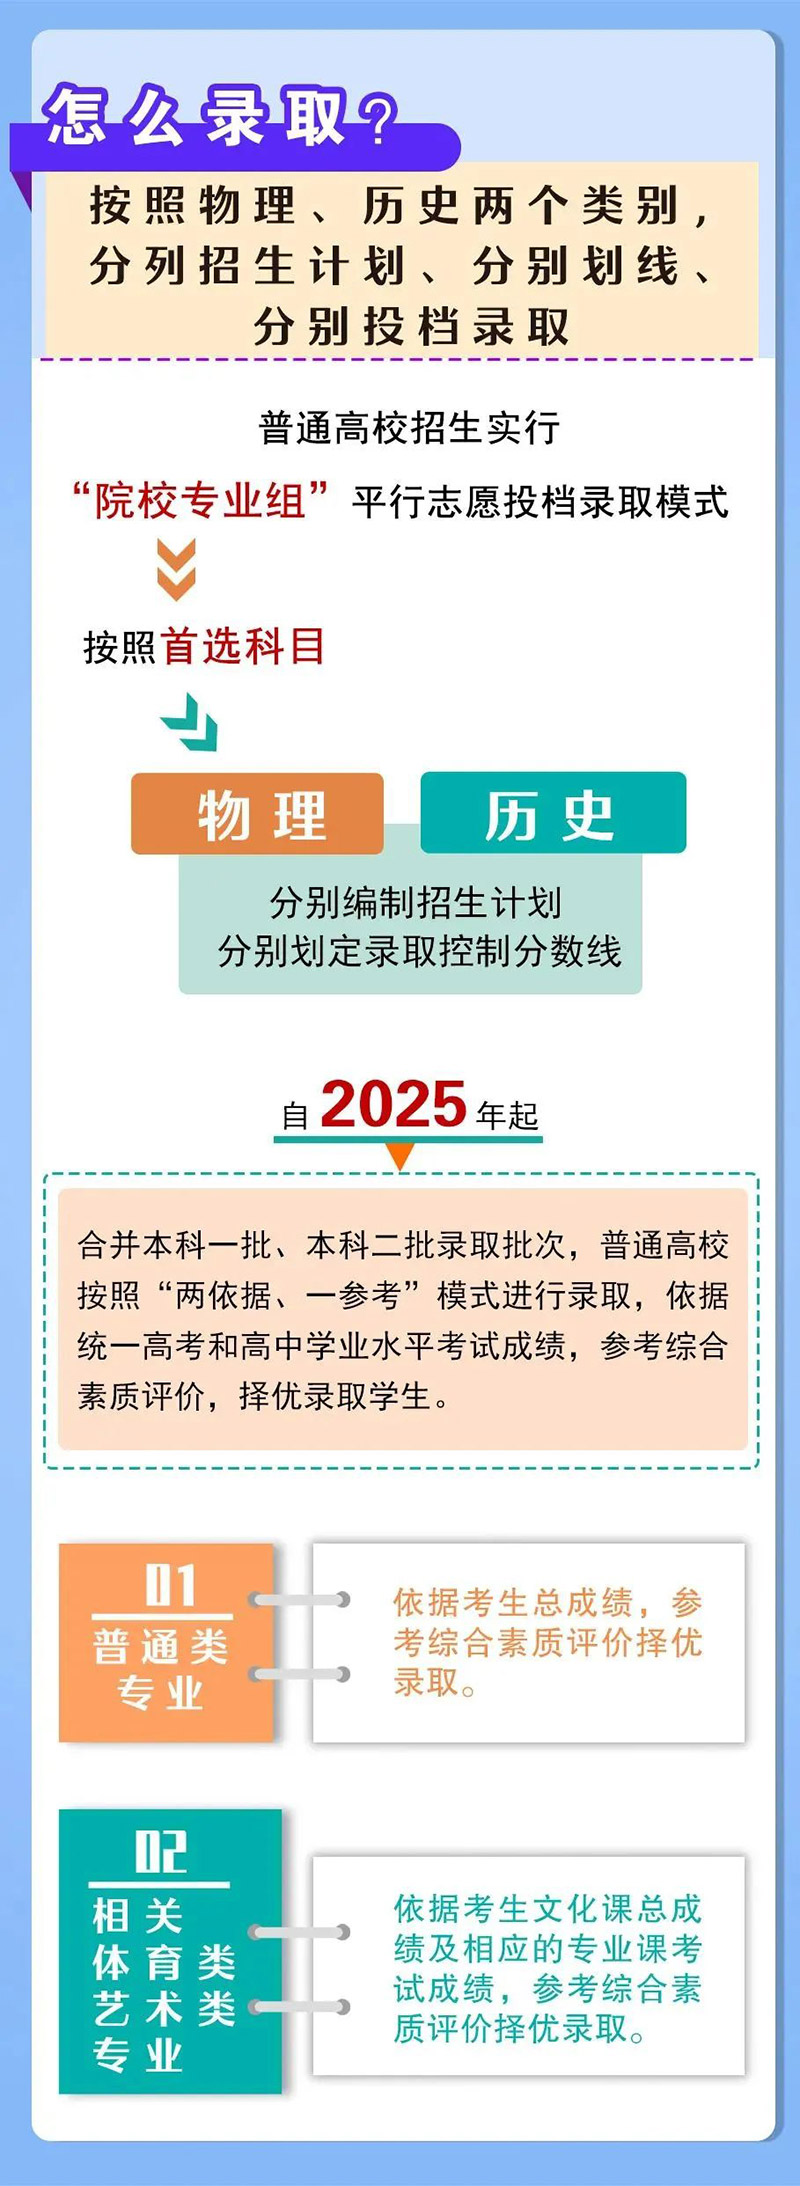 河南省高考综合改革方案-怎么录取